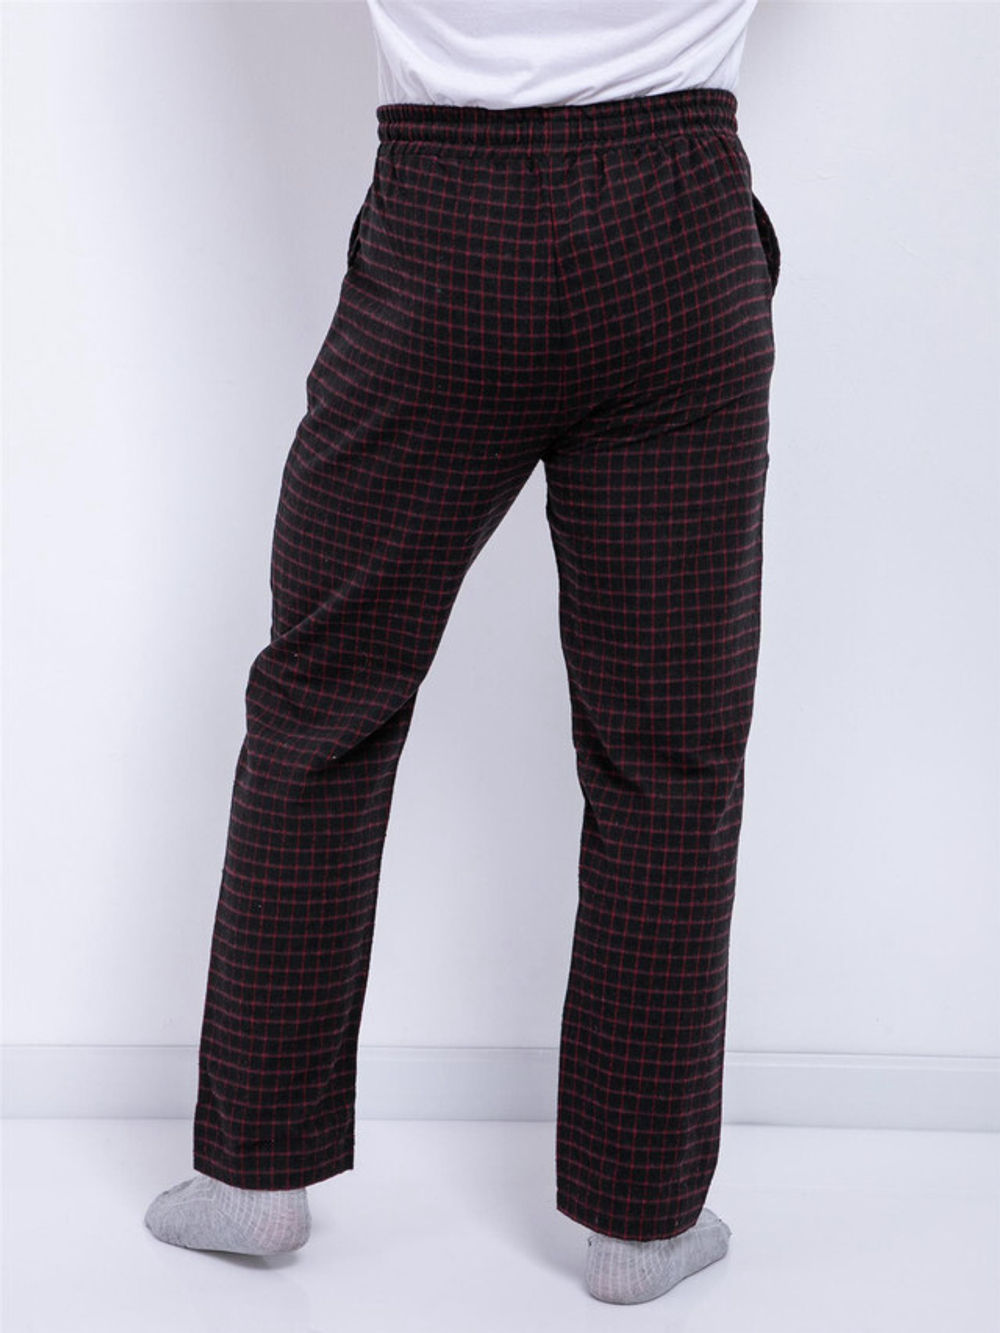 Мужские пижамные штаны для максимального комфорта - ШВЕЙНЫЕ детали, спортивный стиль и 100% хлопок - 09198